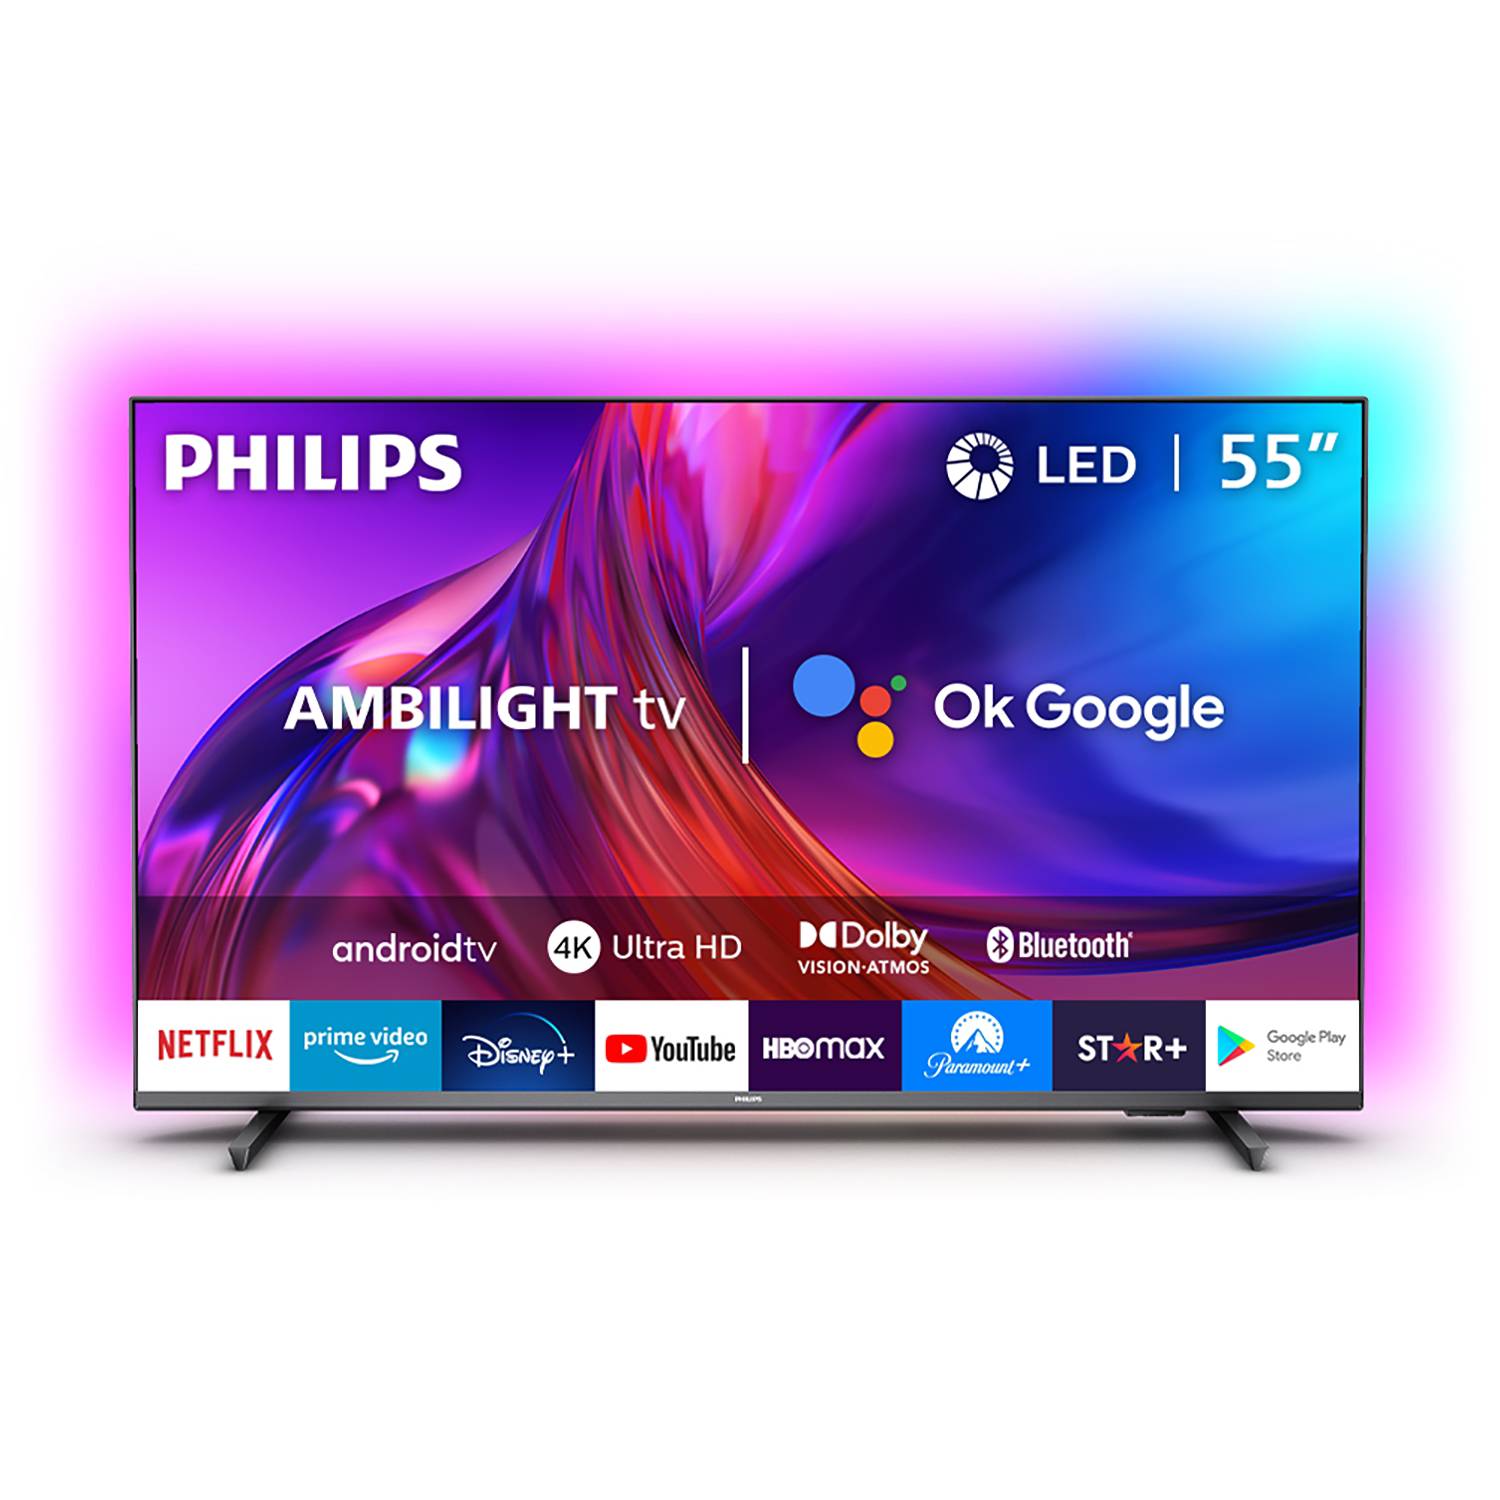 Aumentá tu experiencia con los nuevos Android TV Philips con